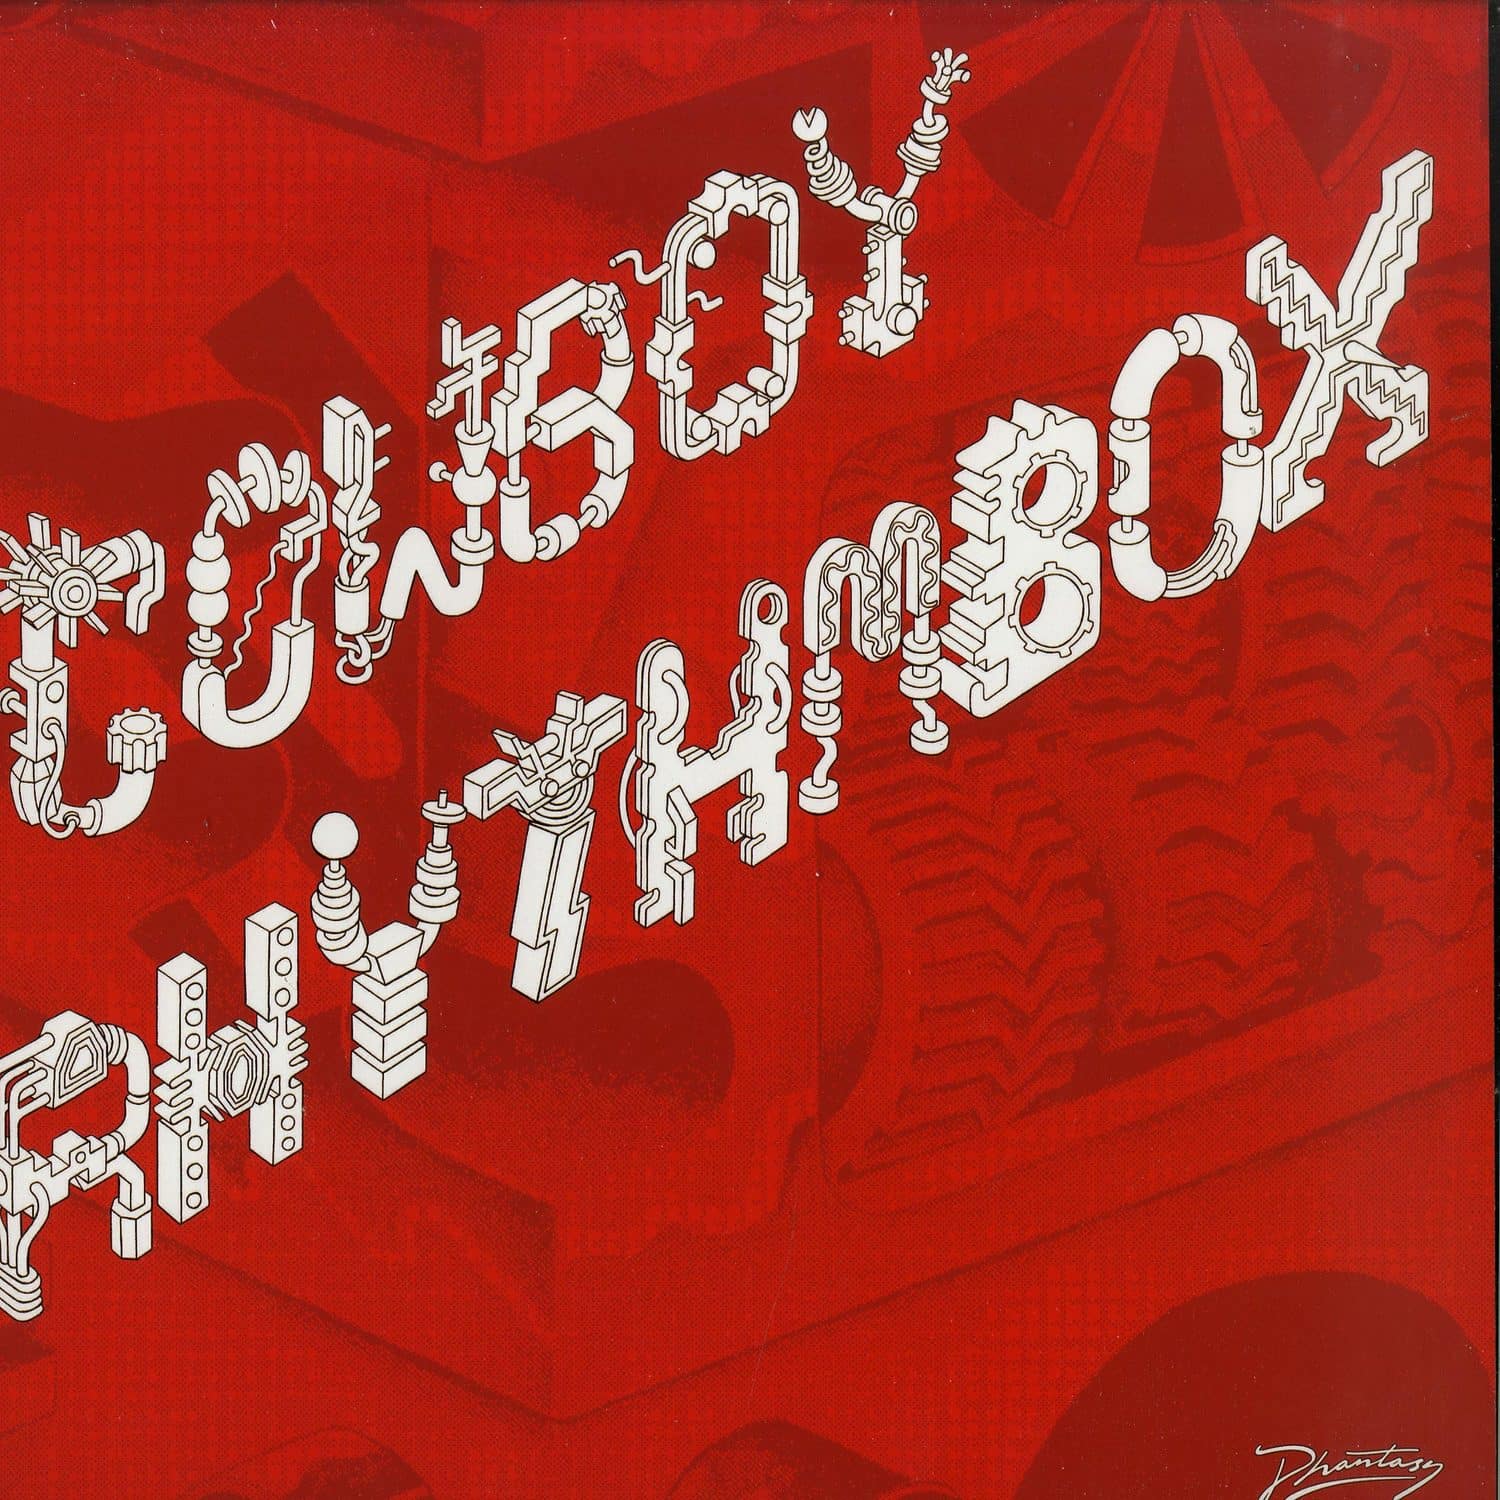 Cowboy Rhythmbox - TERMINAL MADNESS